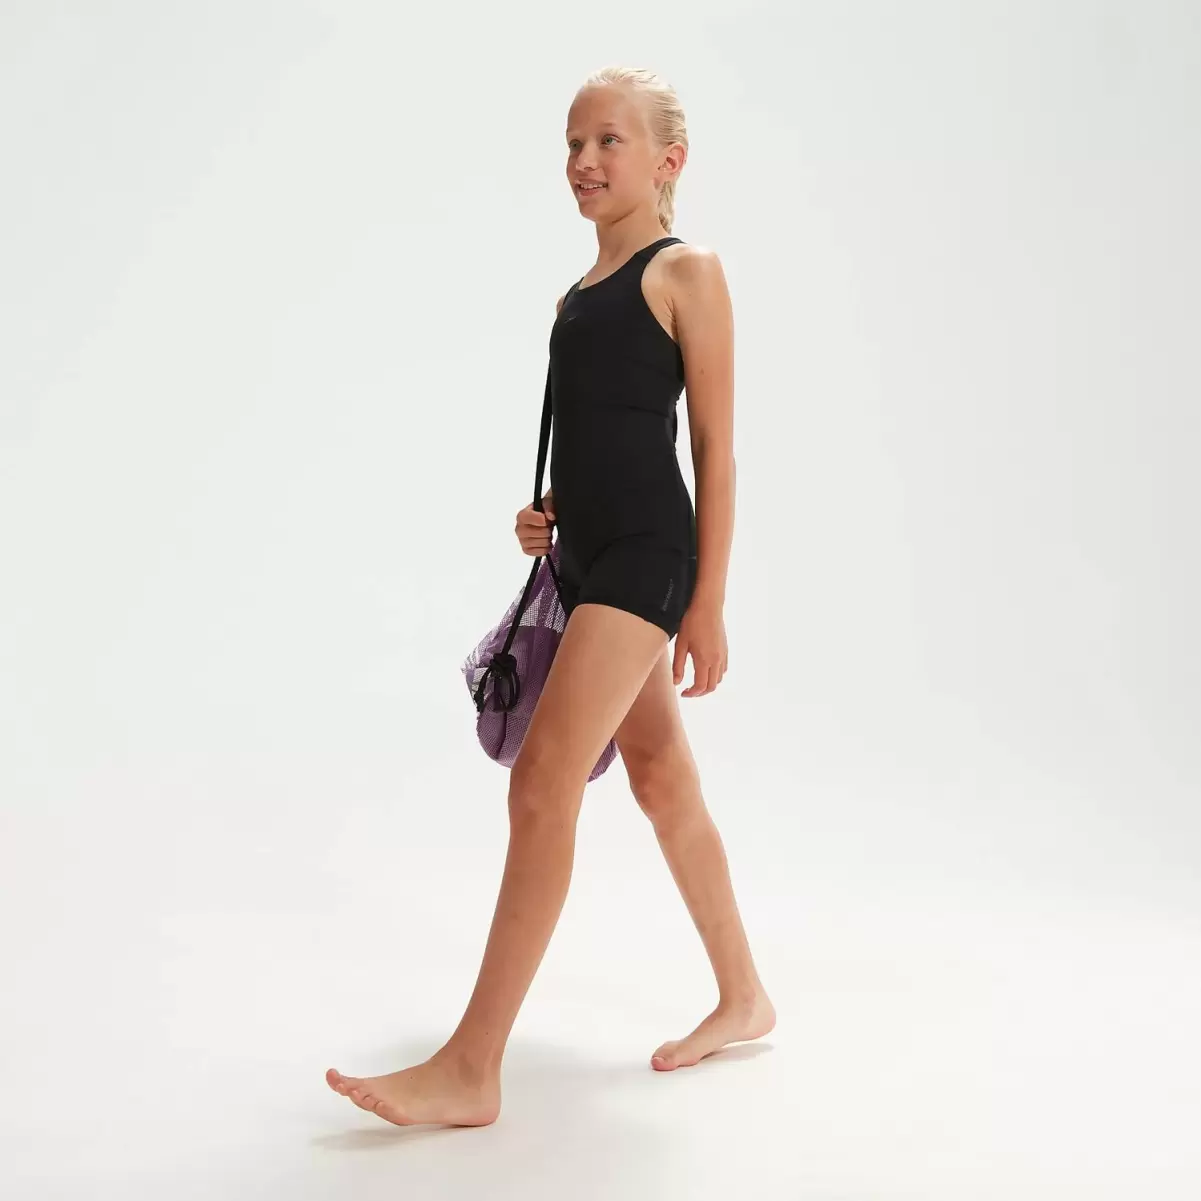 Kinder Mädchen Bademode Speedo Eco Endurance+ Schwimmanzug Für Mädchen Schwarz - 2